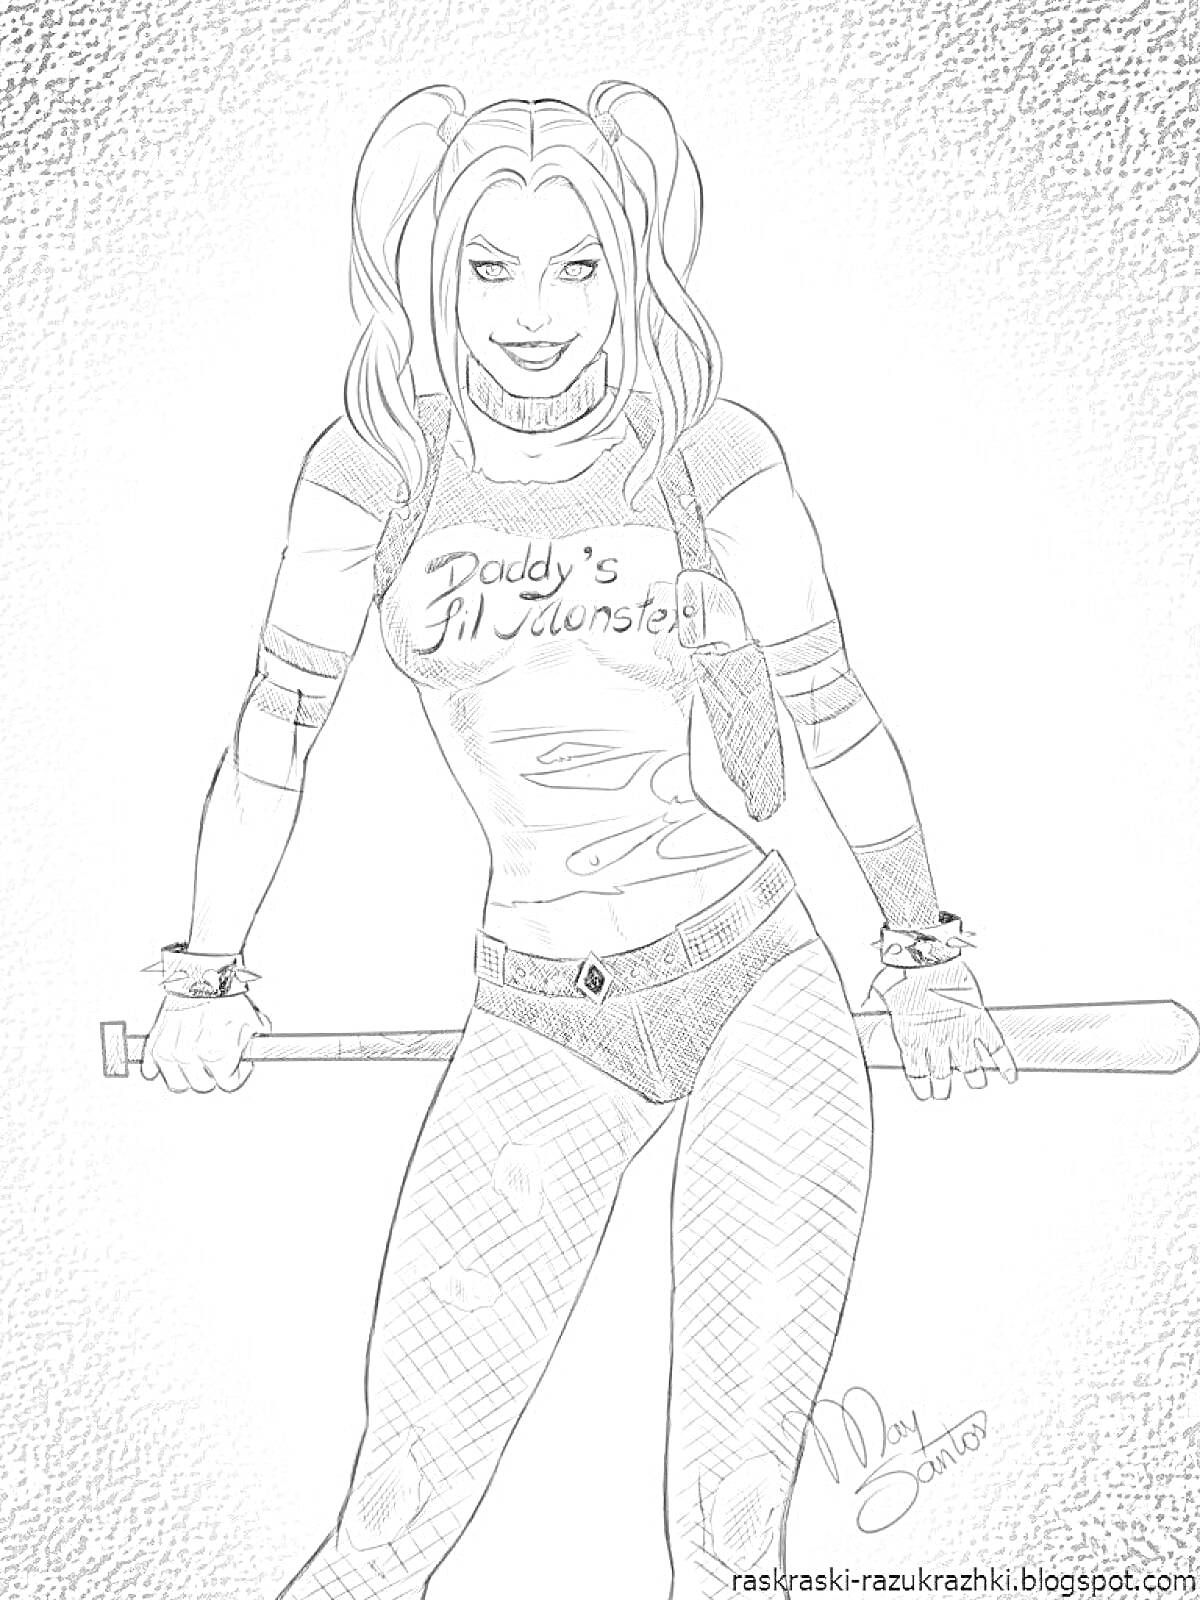 Раскраска Харли Квин с двумя хвостами, в футболке с надписью 